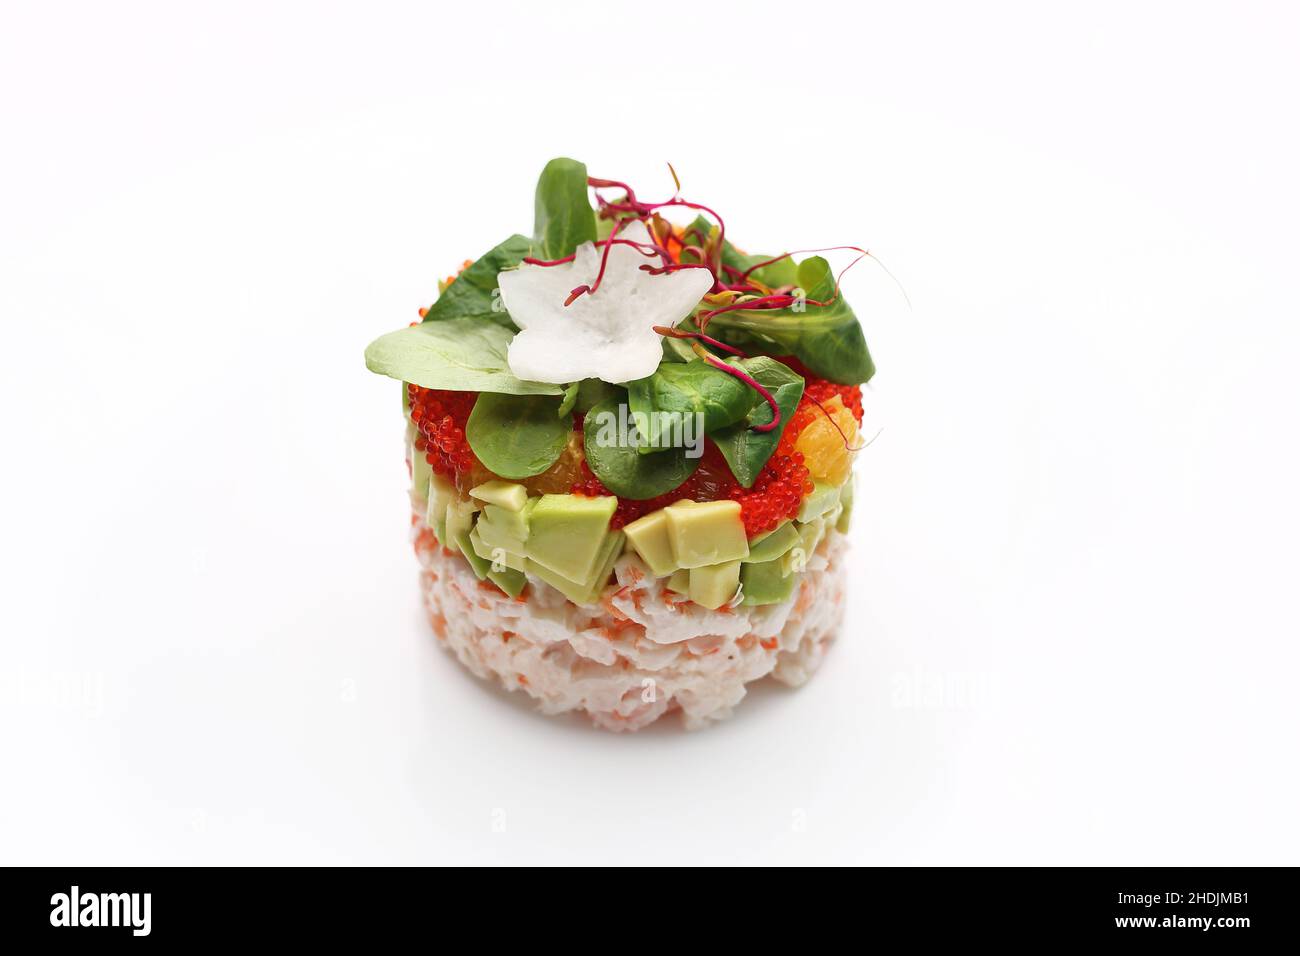 Tartare de crabe haché avec caviar et avocat.Salade de poisson frais hachée.Plat traditionnel japonais sur fond blanc. Banque D'Images